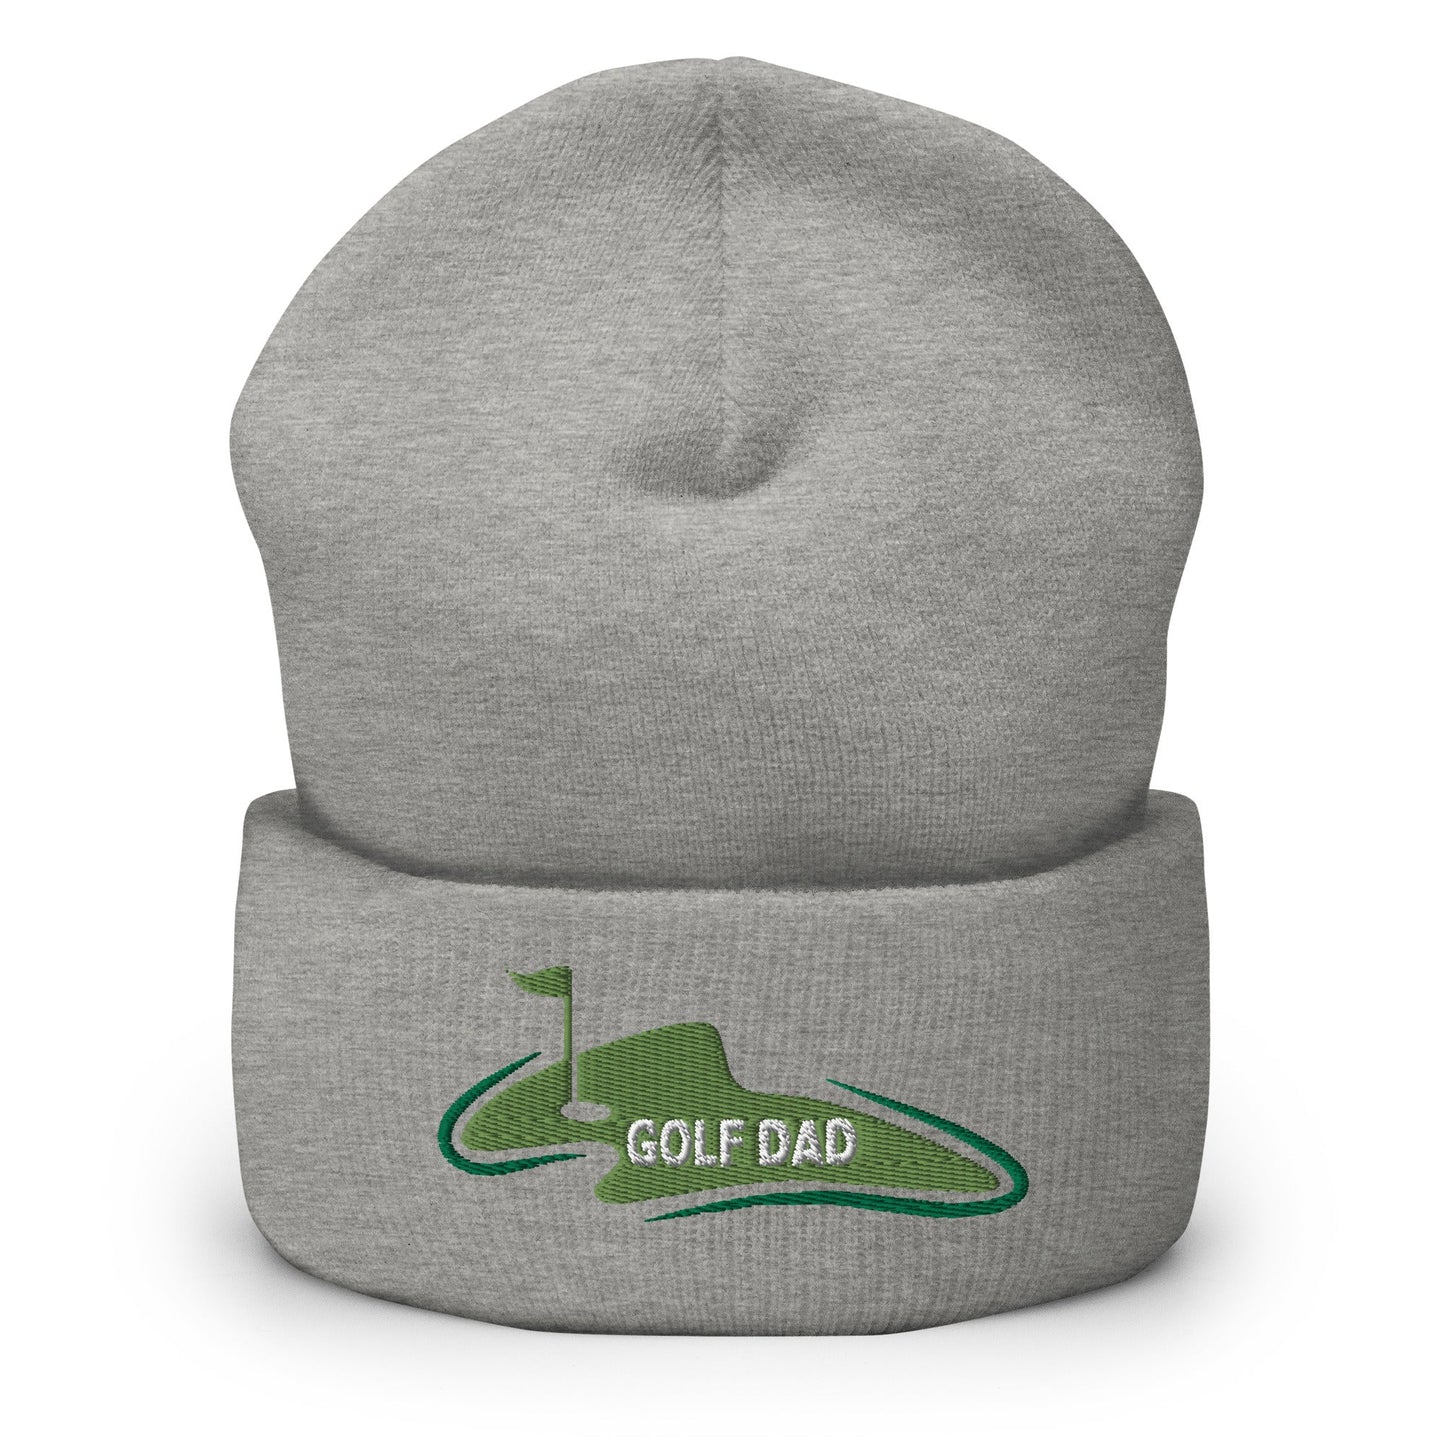 Funny Golfer Gifts  Beanie Heather Grey Golf Dad Beanie